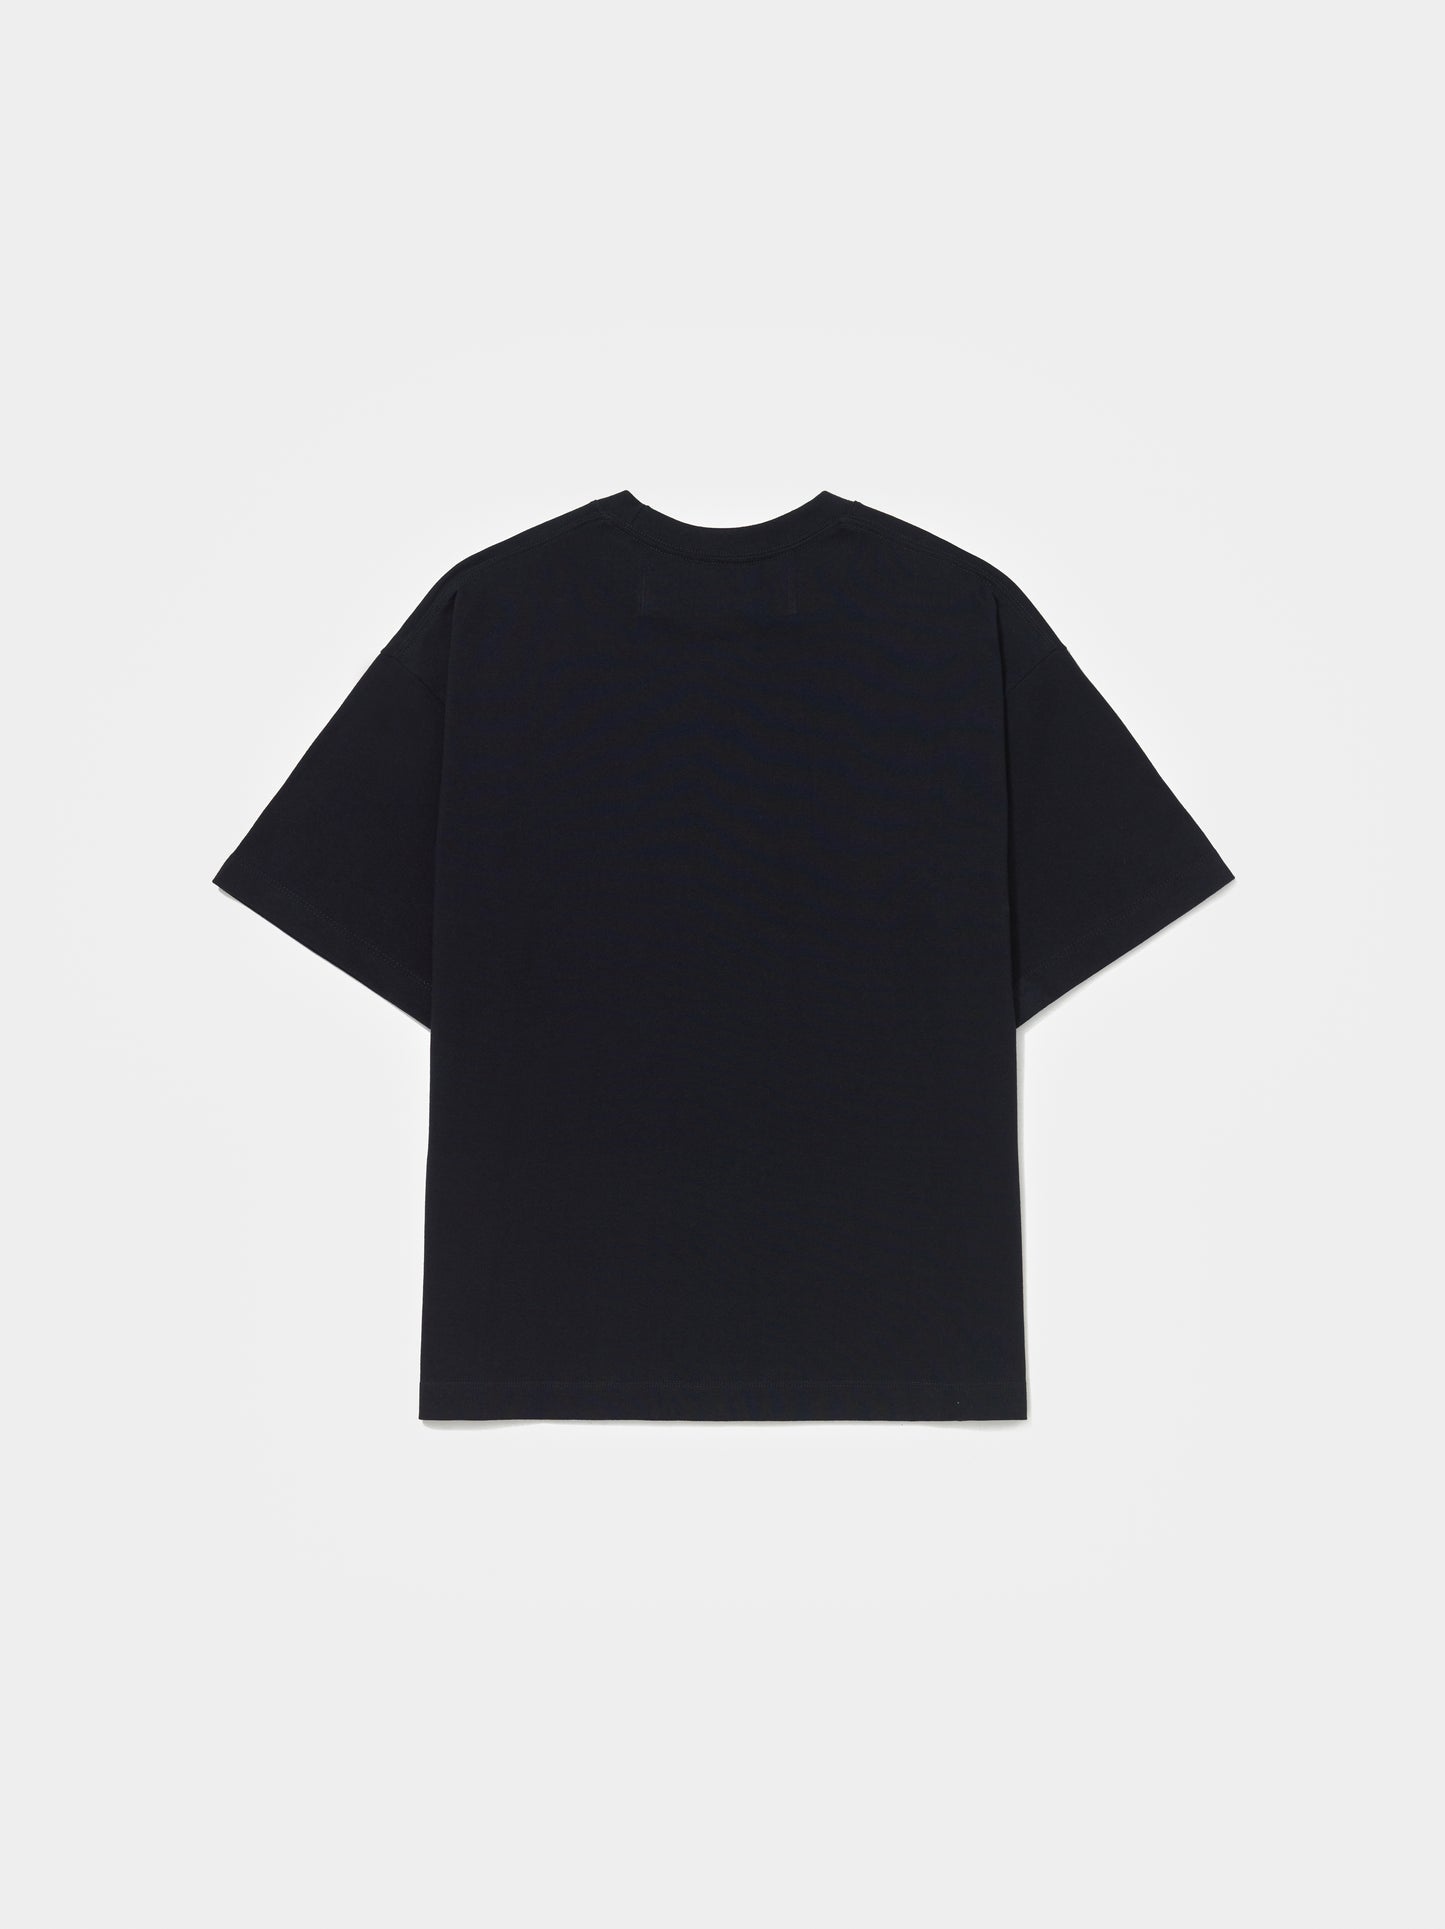 PIET - Camiseta Dada Black